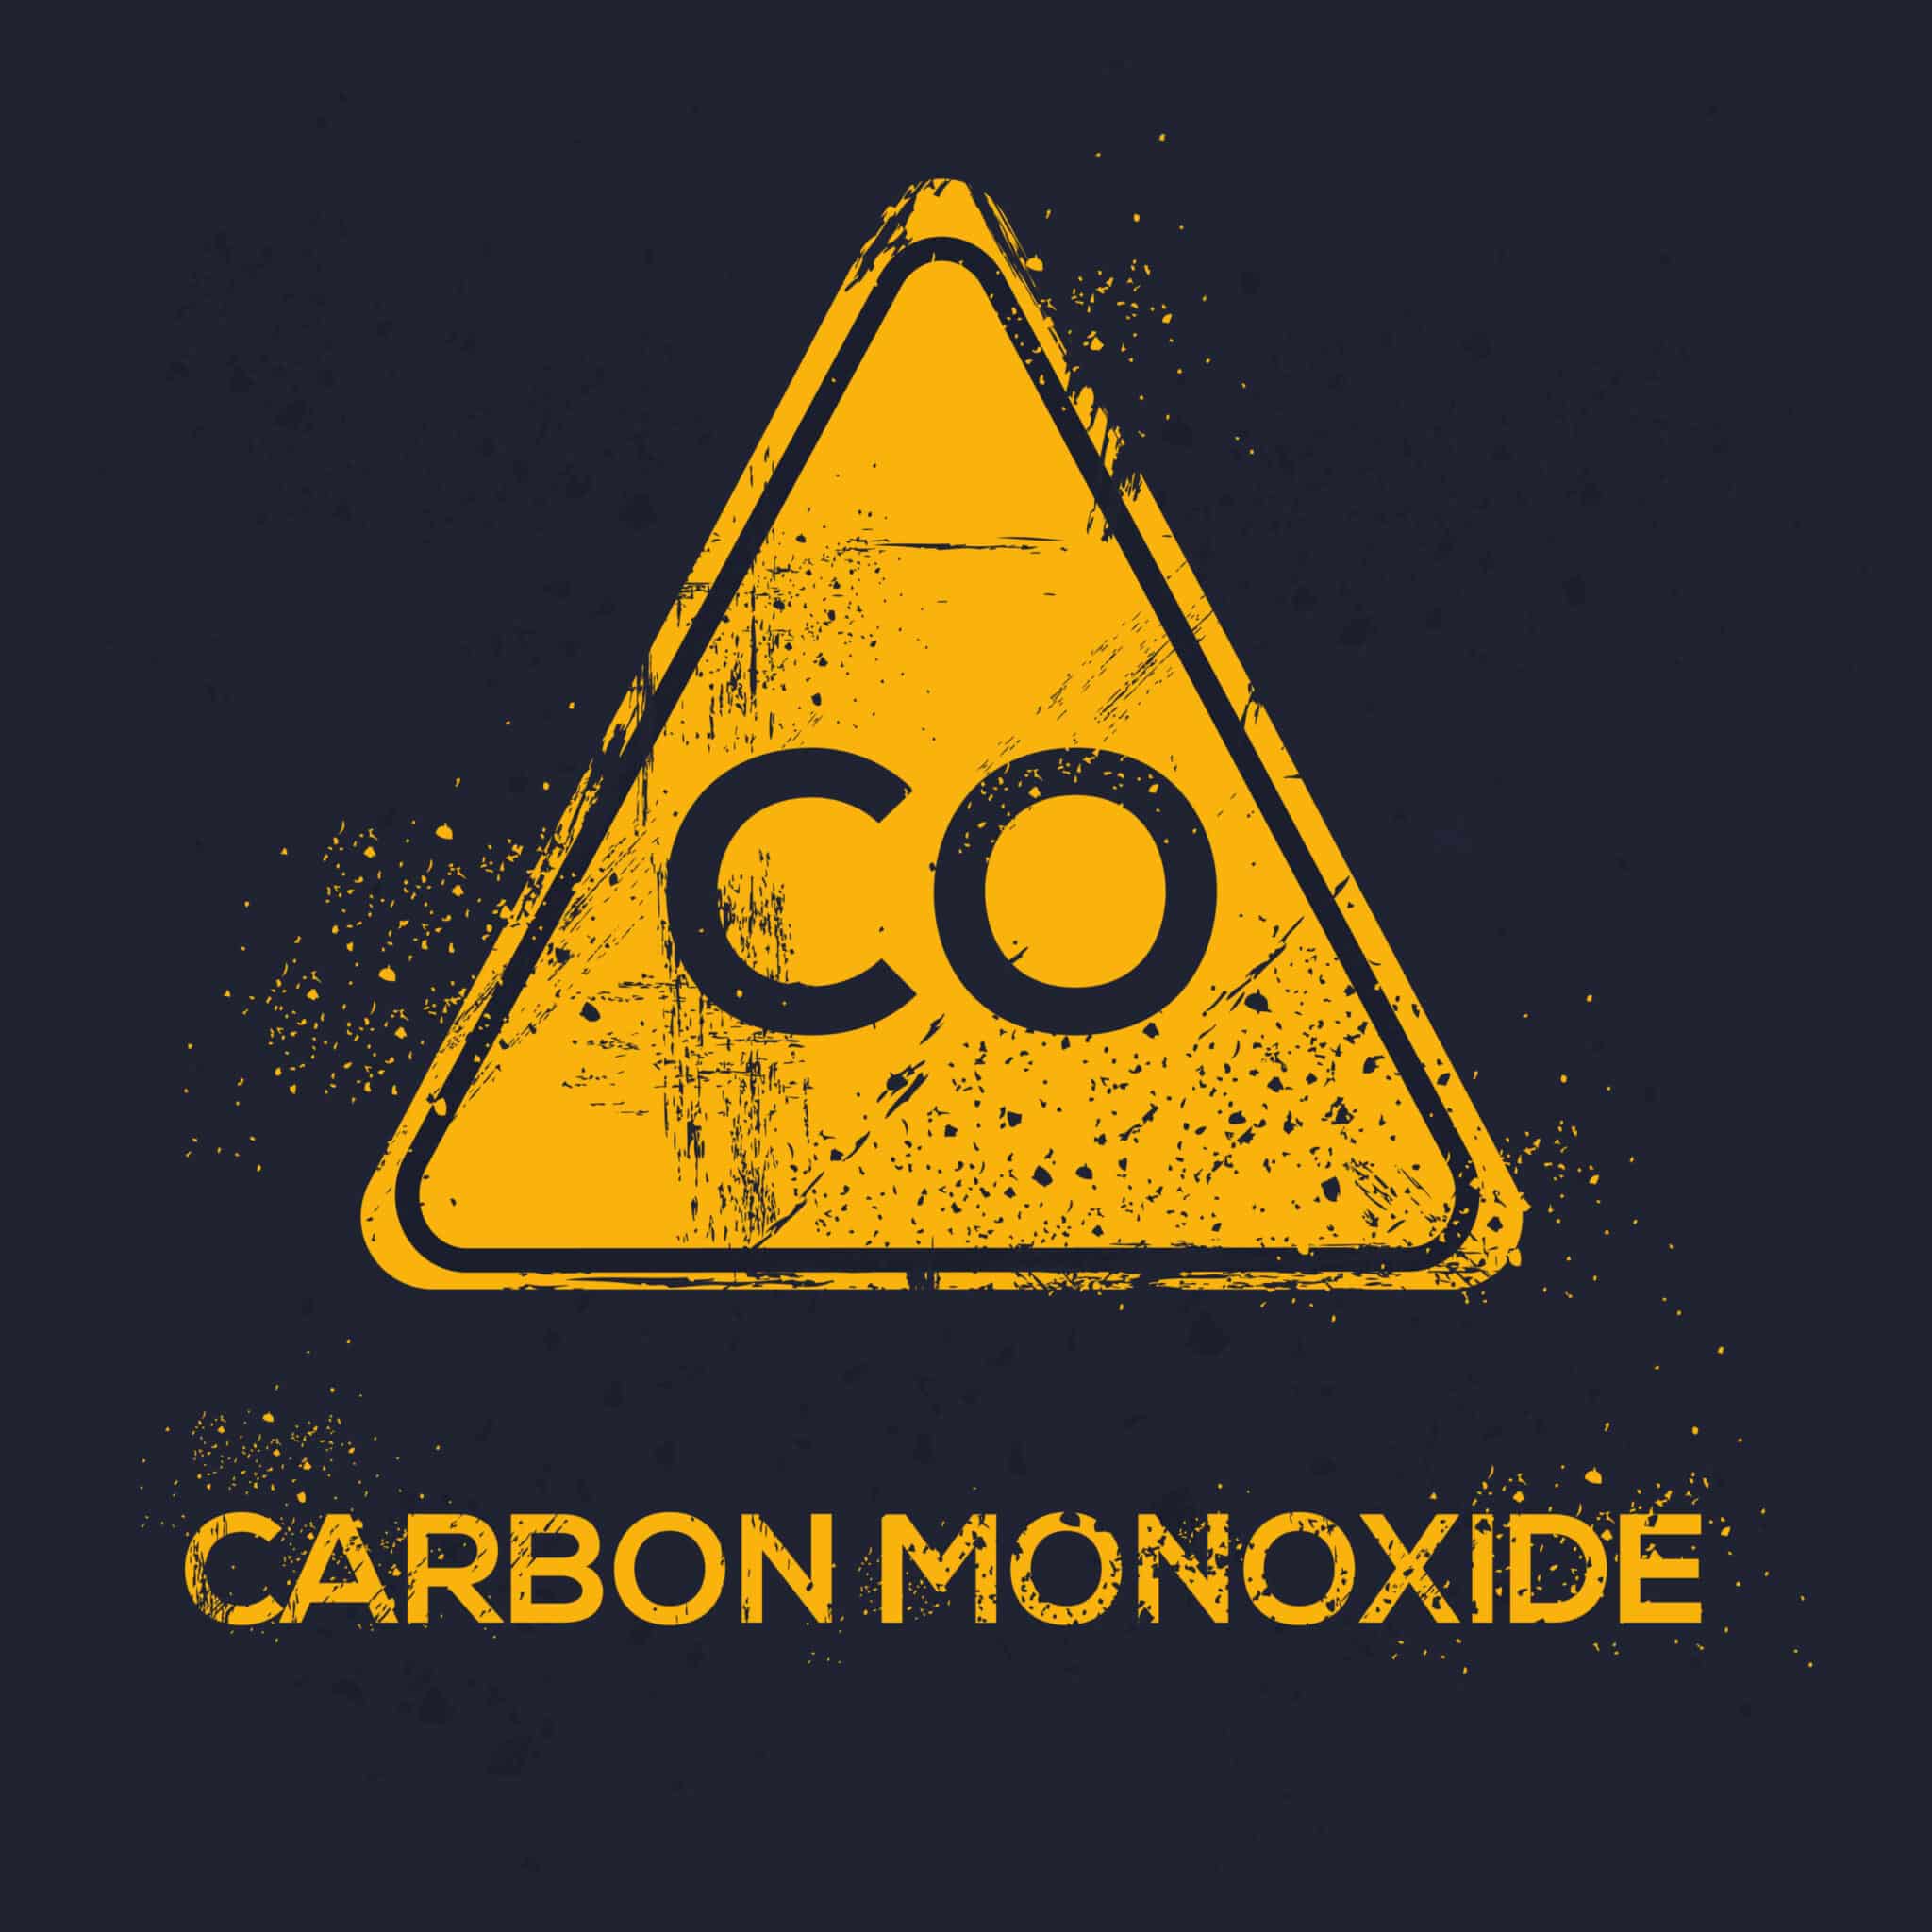 Carbon Monoxide Dangerous